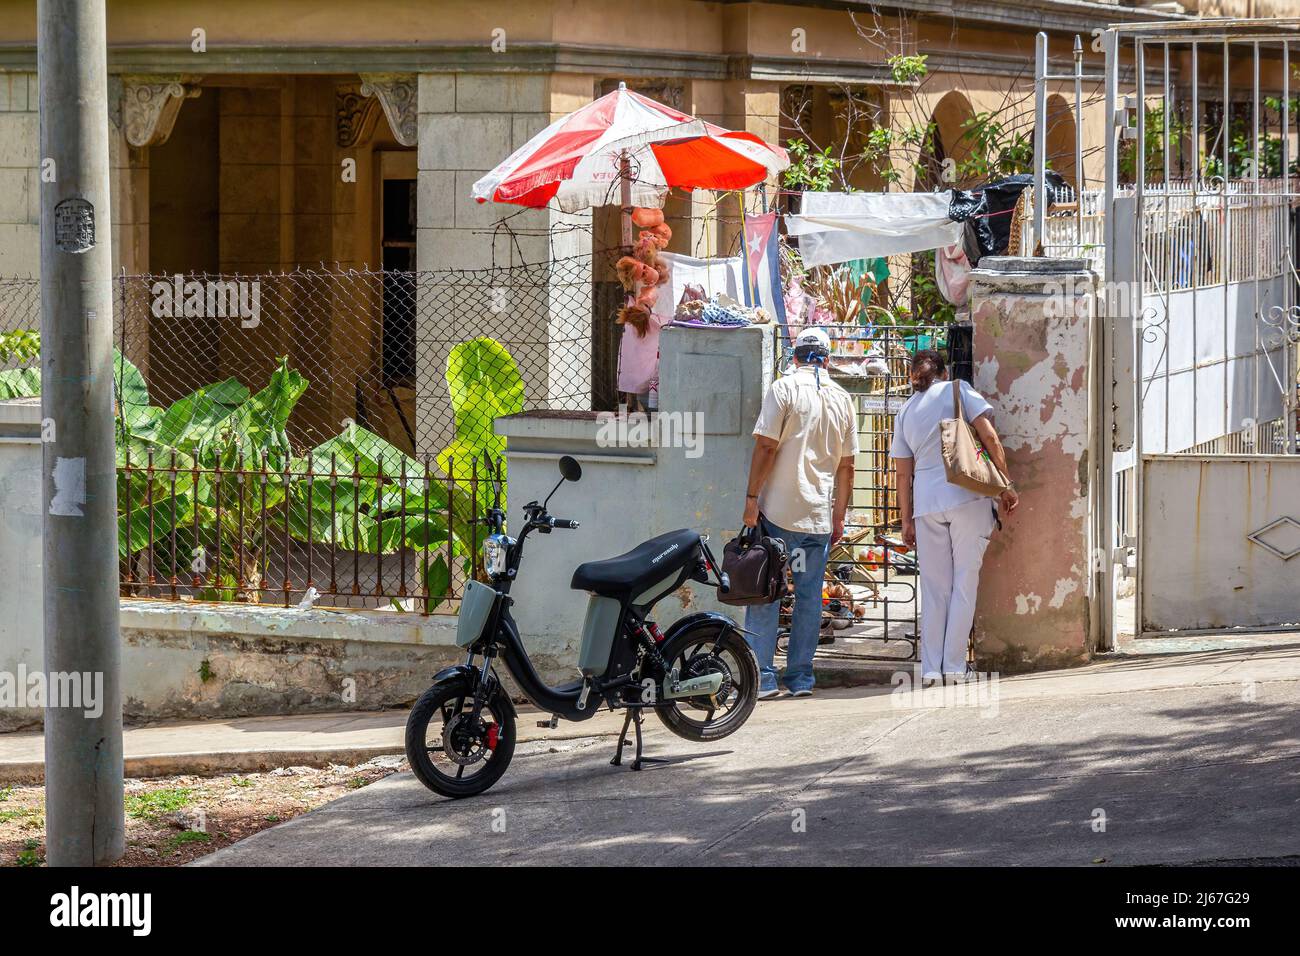 Zwei Kubaner stöbern in einem kleinen Geschäft, das auf einem Hinterhof des Hauses liegt. Rechts trägt die Frau eine Krankenschwester-Uniform. Eine elektrische Stockfoto